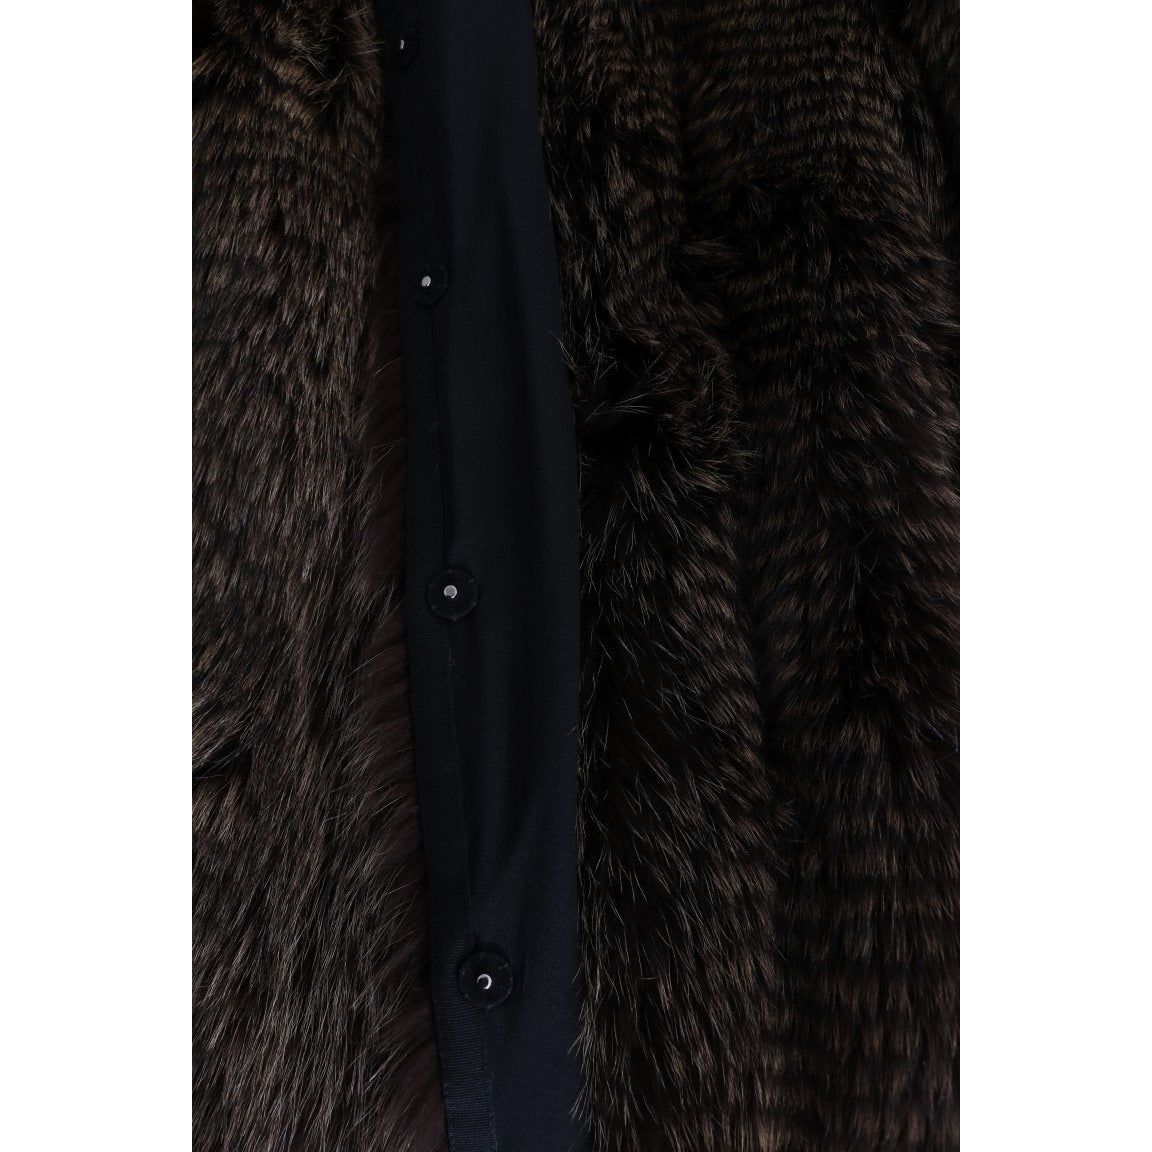 Dolce & Gabbana | Brown Raccoon Fur Coat Jacket | McRichard Designer Brands